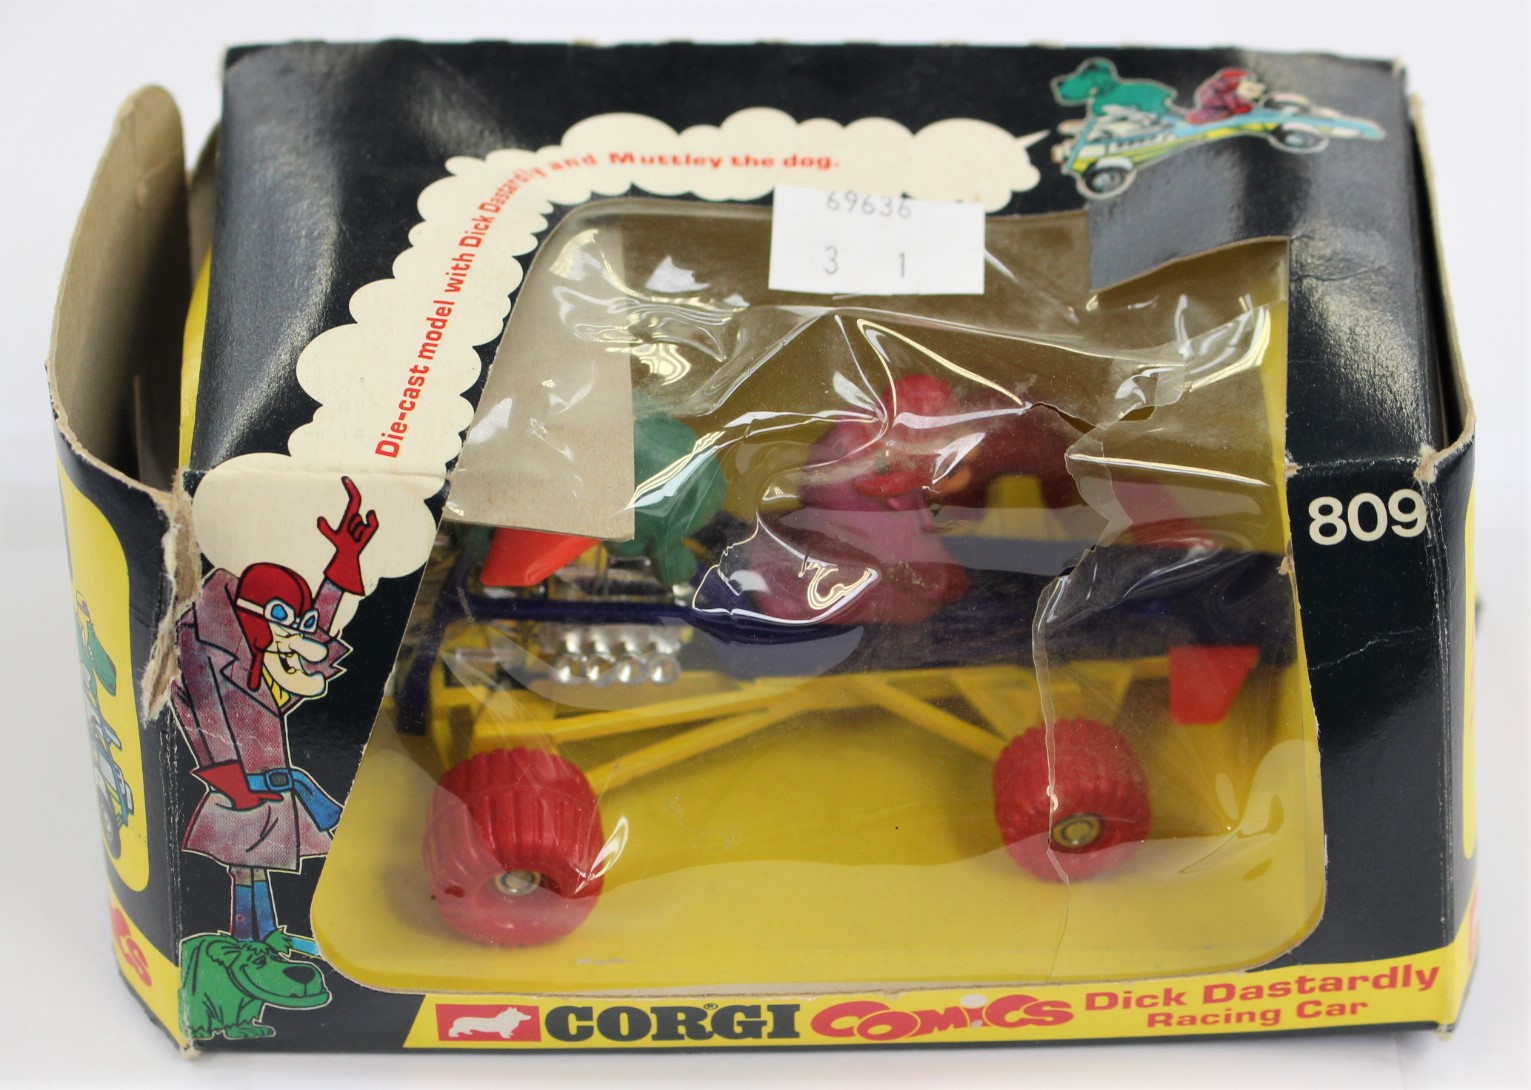 A boxed Corgi comics Dick Donstaradly car No 8019